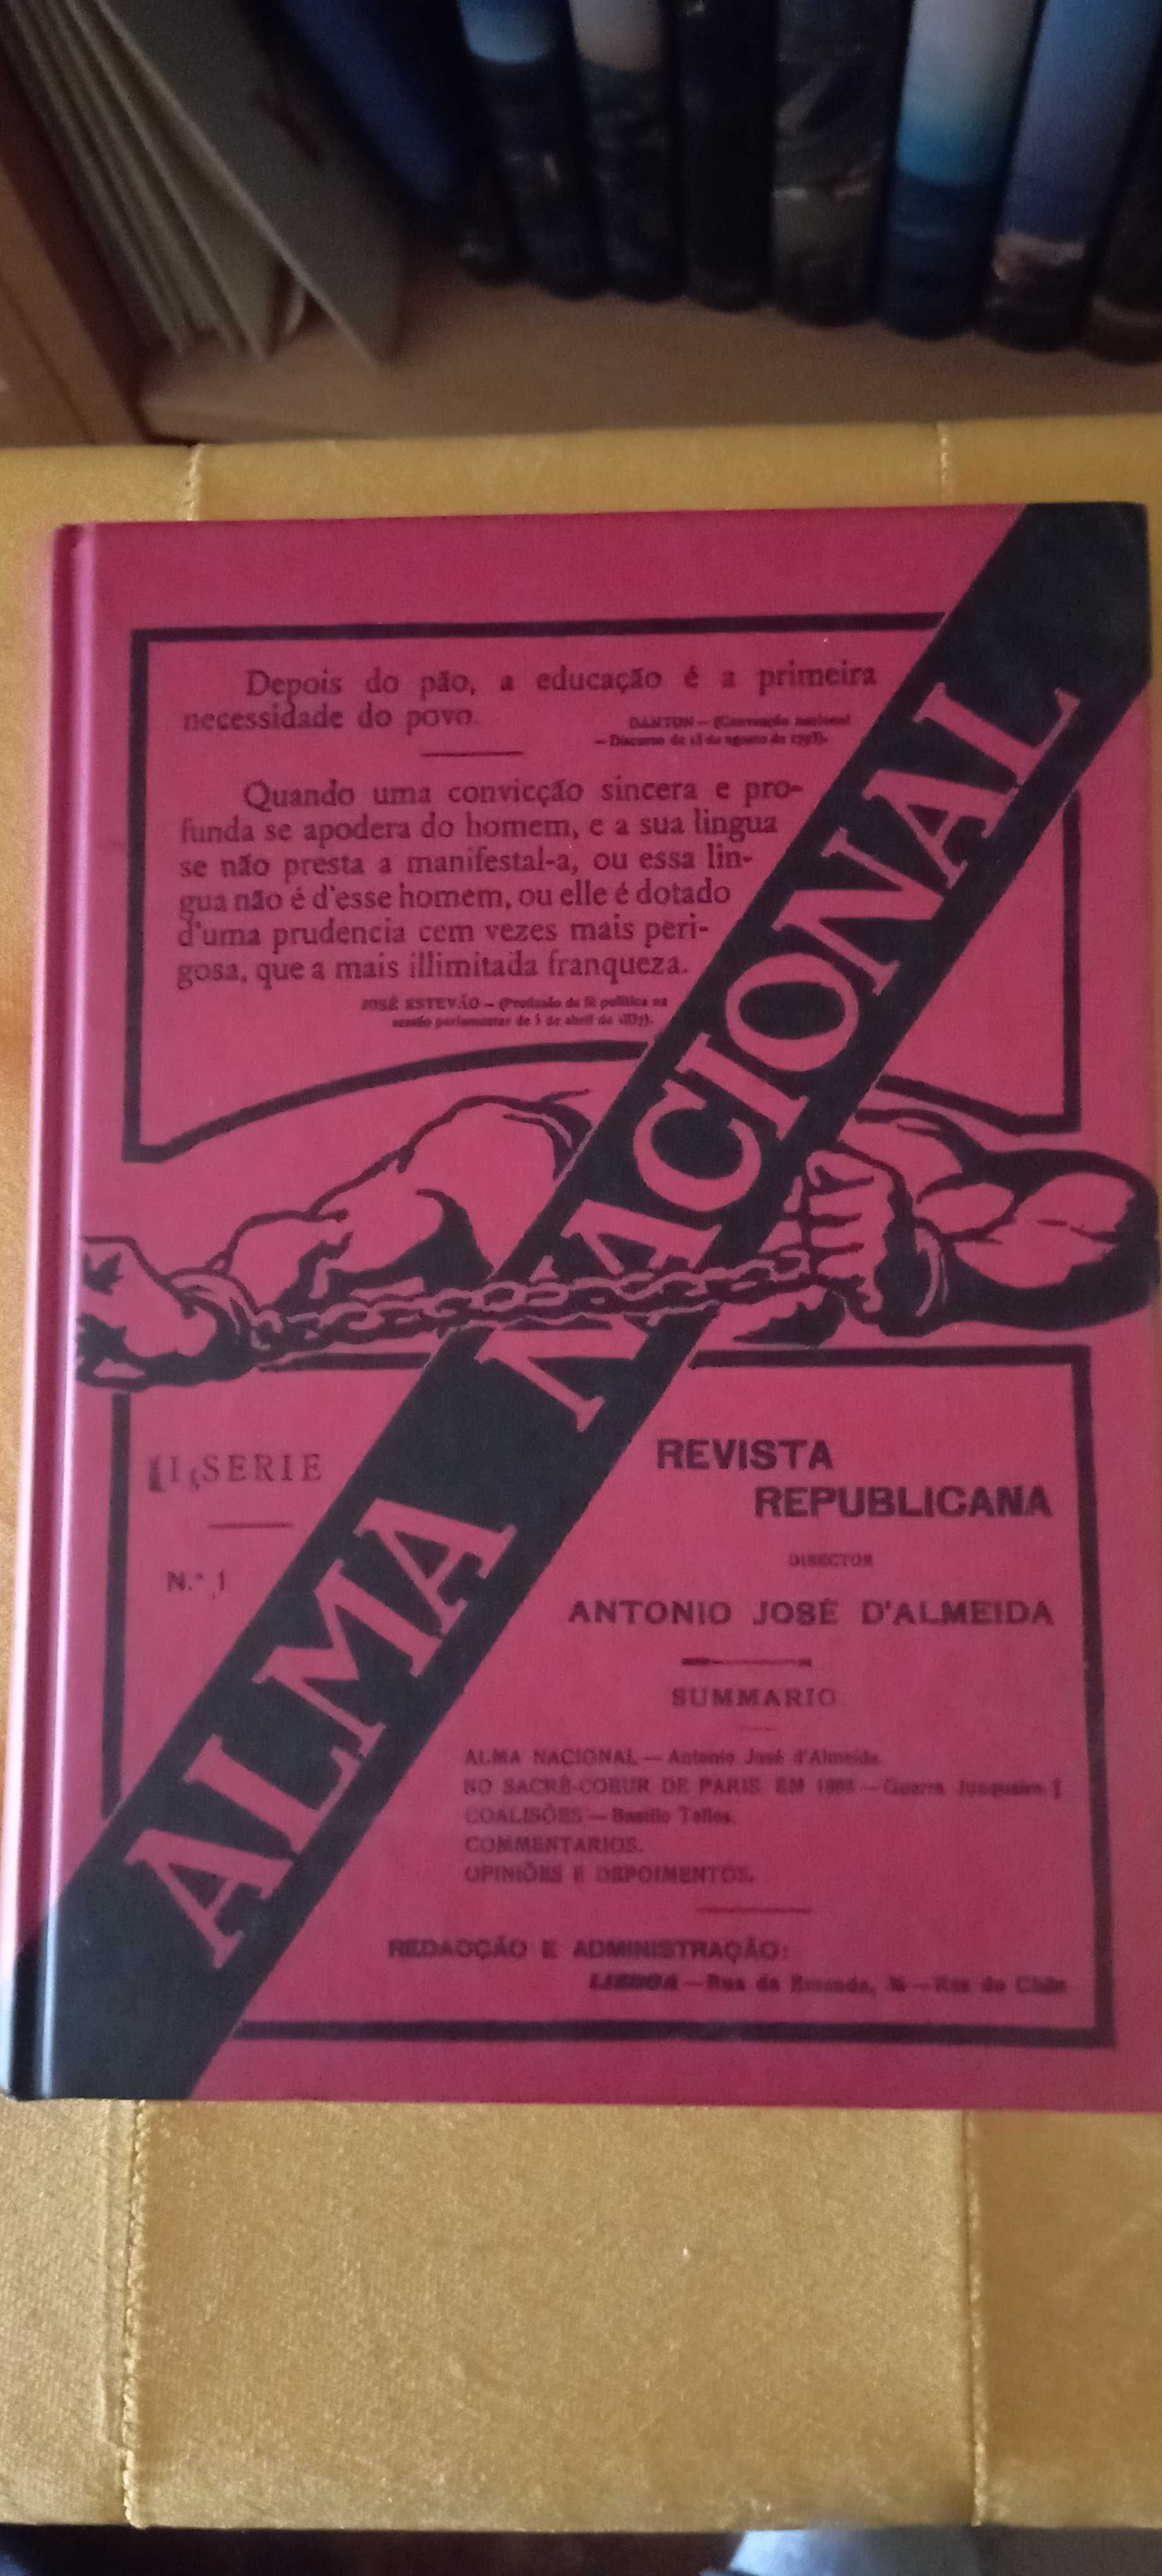 Alma Nacional - Revista Republicana